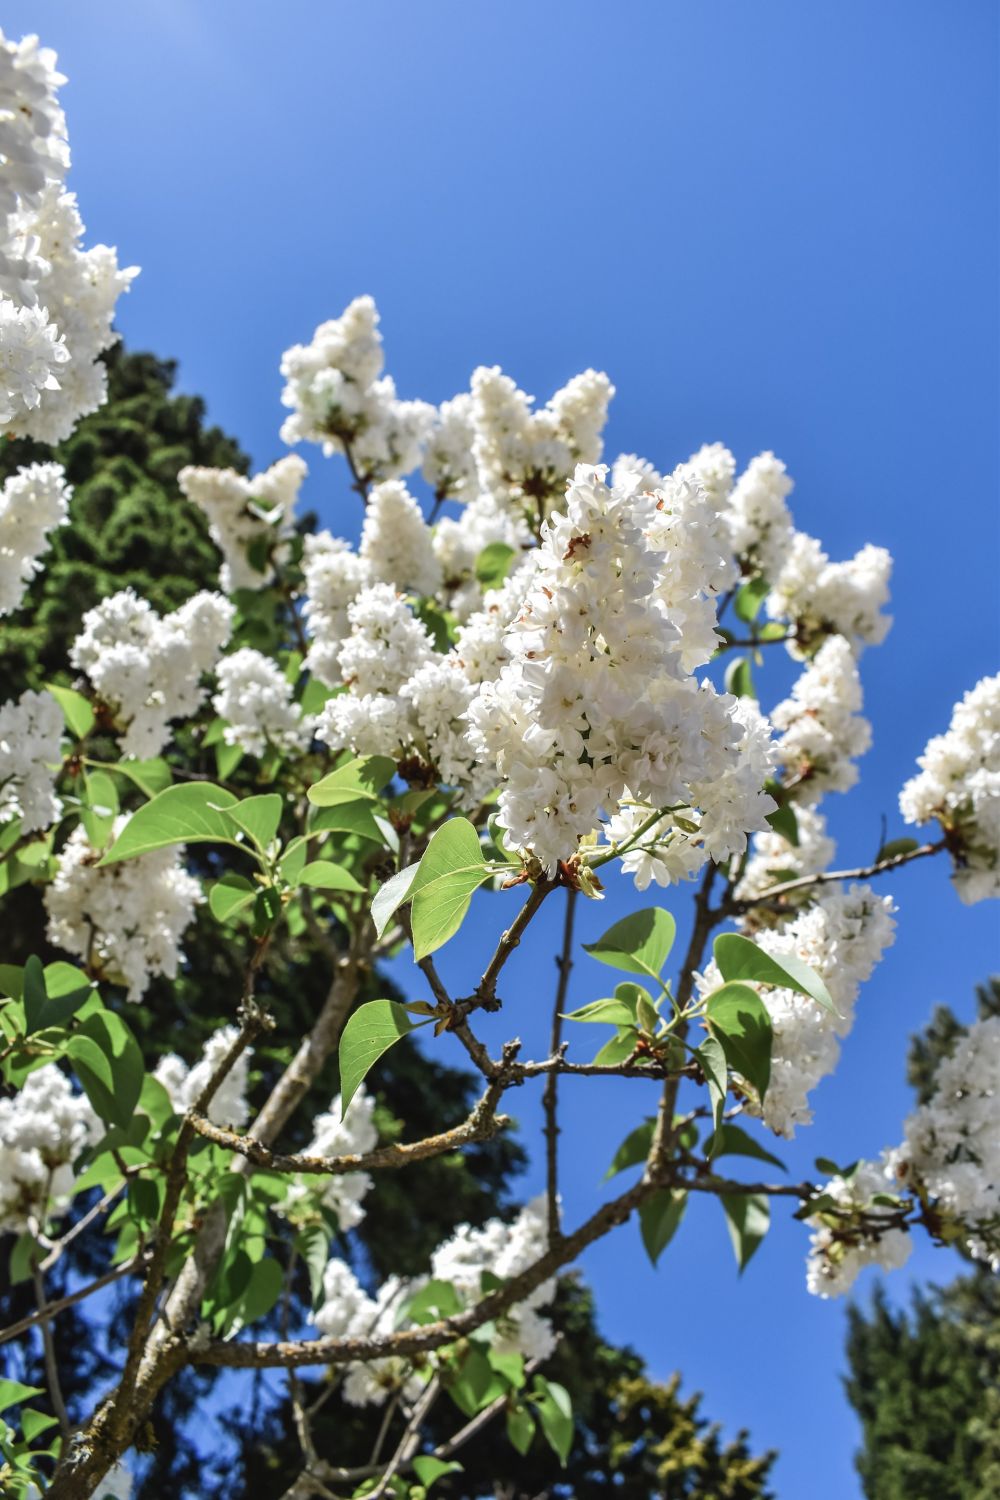 11 Fakta Lilac, Bunga yang Bermanfaat Bagi Manusia dan Serangga